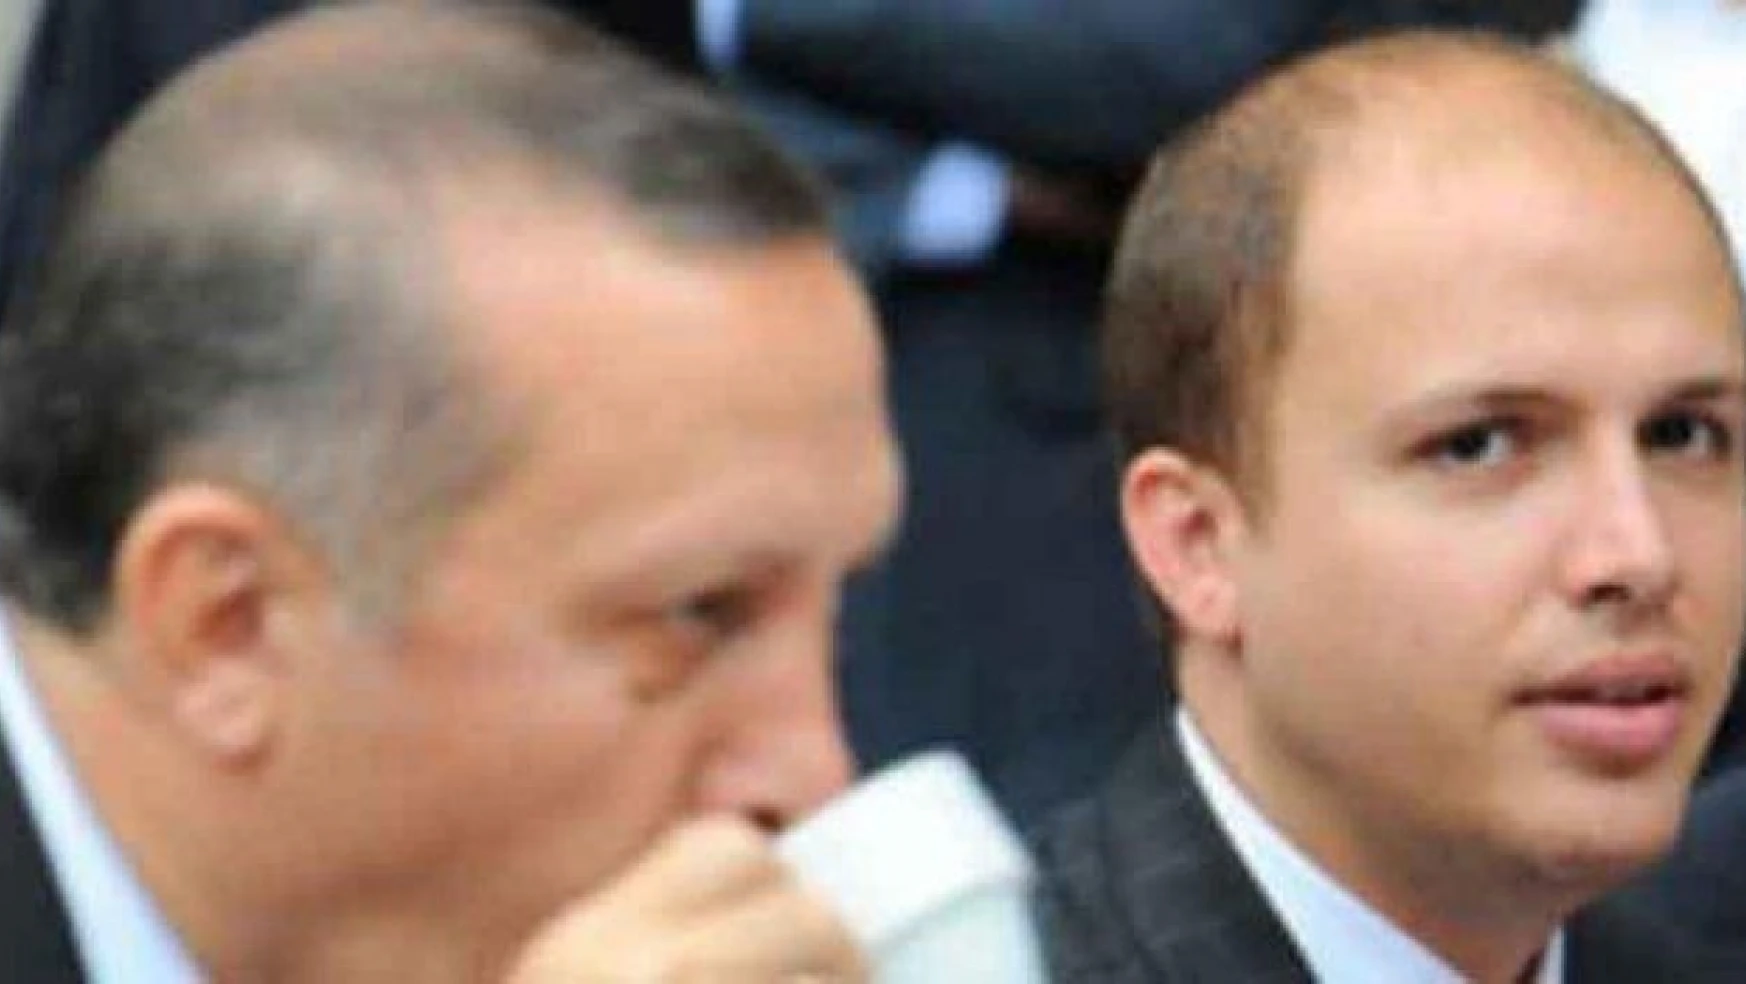 Erdoğan, Fuat Avni'ye yanıt verdi: Böyle yalan olur mu?